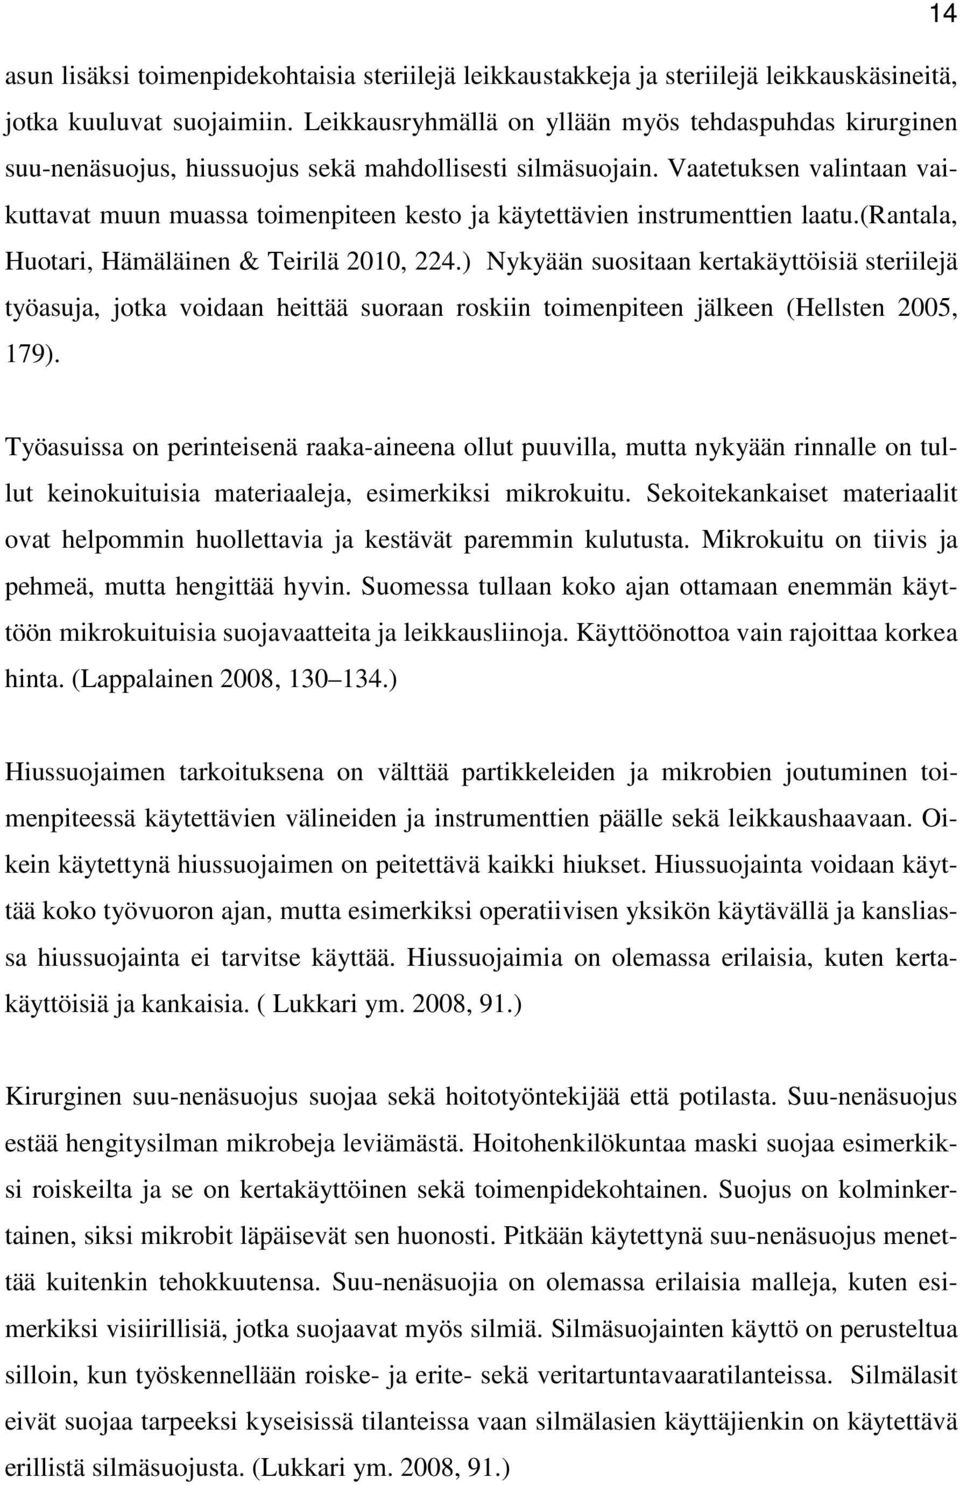 Vaatetuksen valintaan vaikuttavat muun muassa toimenpiteen kesto ja käytettävien instrumenttien laatu.(rantala, Huotari, Hämäläinen & Teirilä 2010, 224.